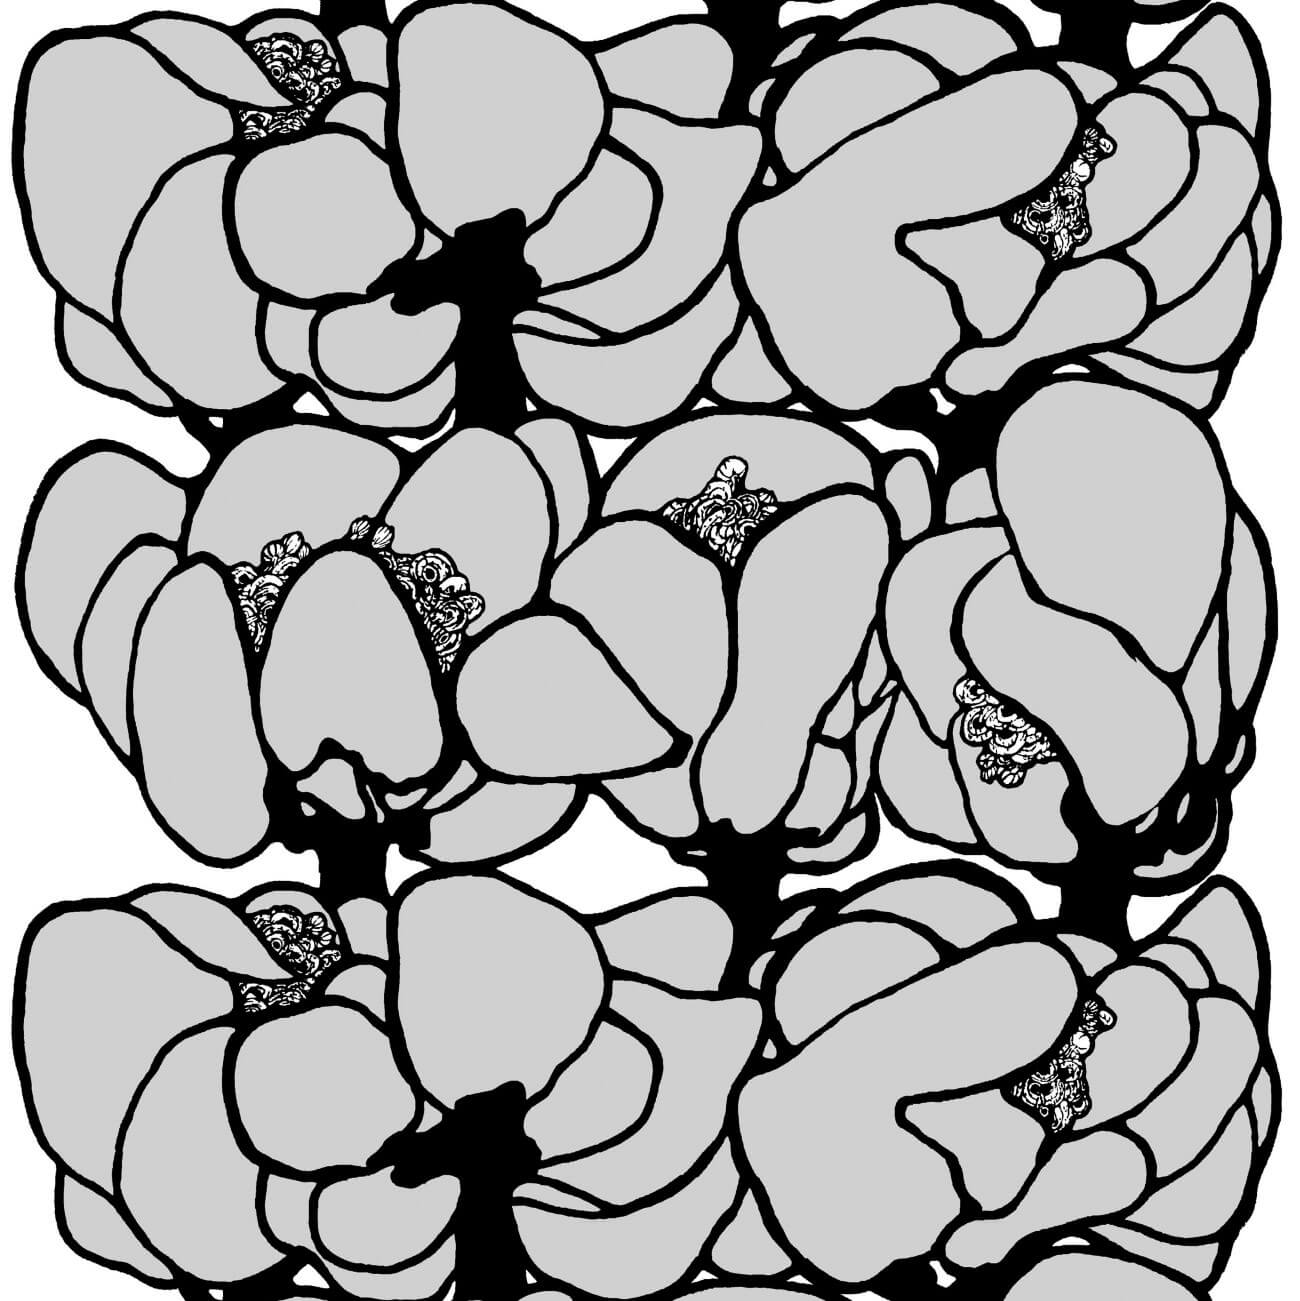 Zasłony przyciemniające MAKEBA. Fragment wzoru zasłony na taśmie z dużymi szaro czarnymi kwiatami. Nowoczesny skandynawski design